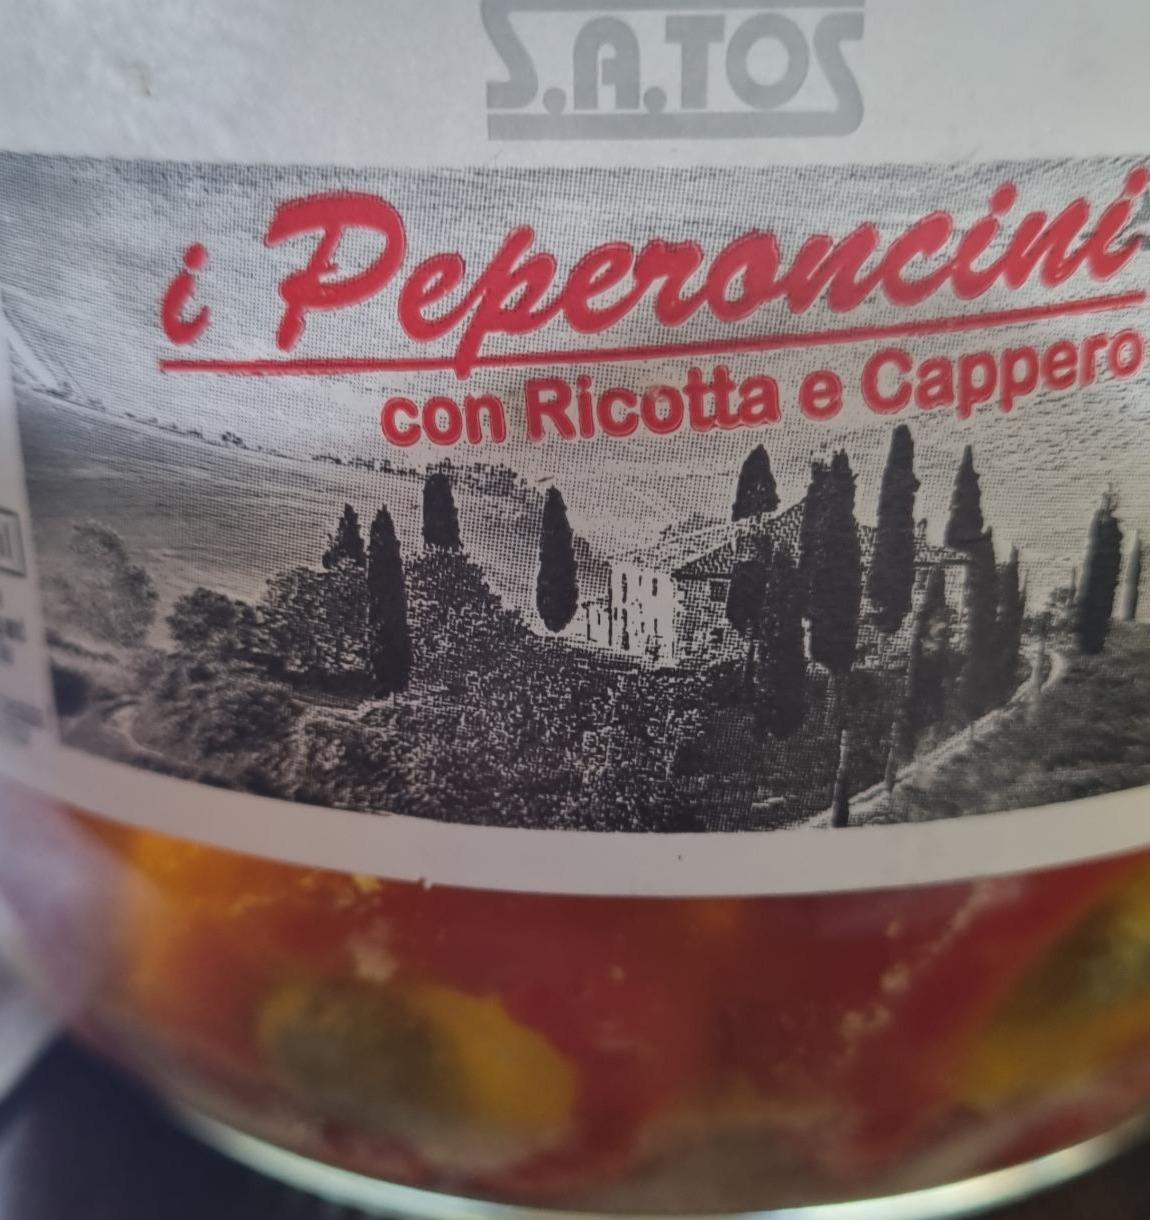 Фото - Консервированные перцы с рикоттой Pepperoncini con Ricotta e Cappero